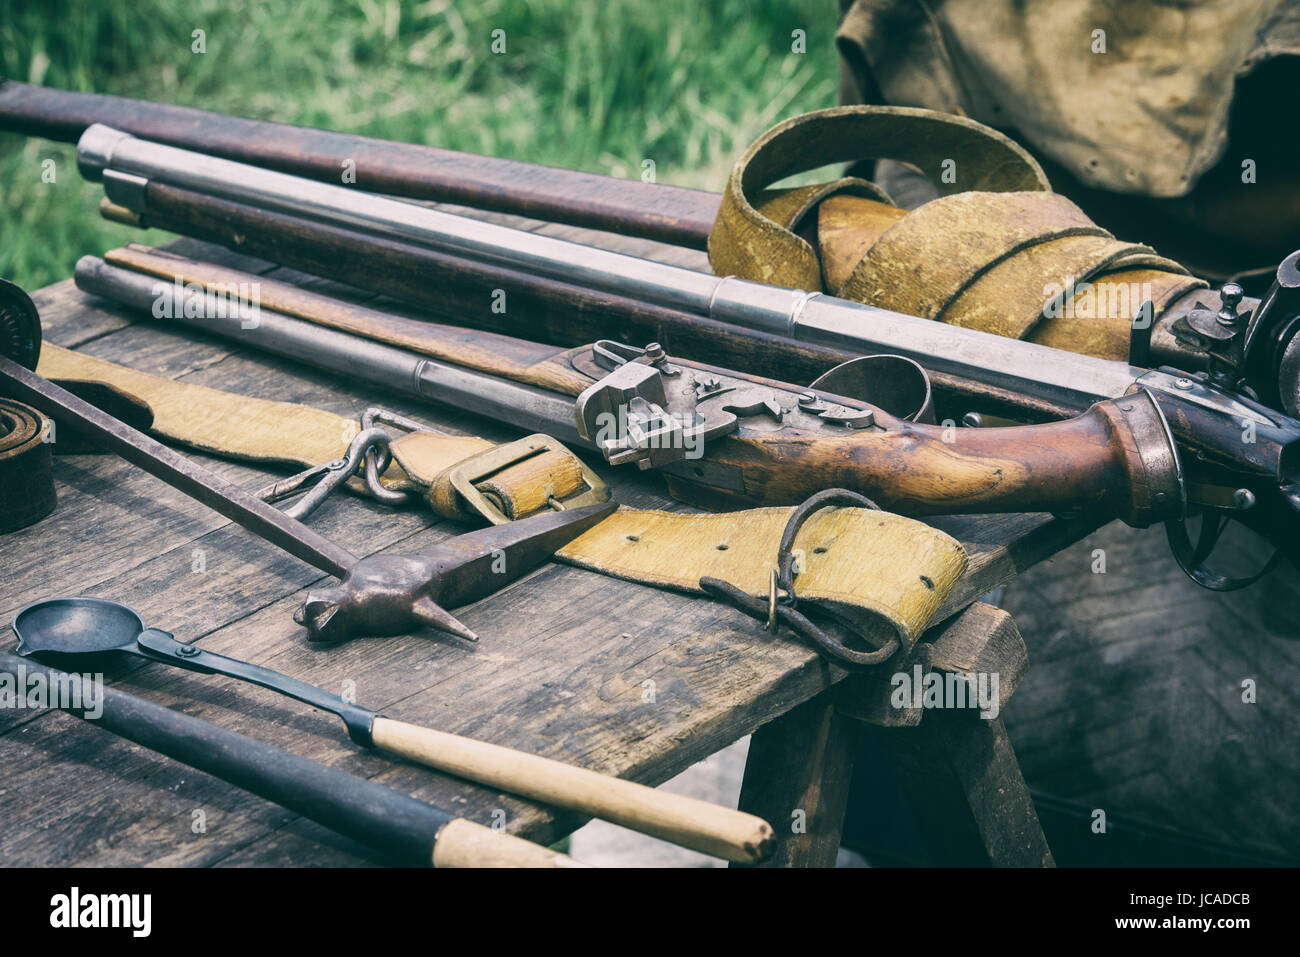 Tabelle der englischen Bürgerkrieg Waffen und Werkzeuge zur Herstellung von Schuss in ein Lager bei einem Sealed Knot englischen Civil War Reenactment Event führen. UK Stockfoto